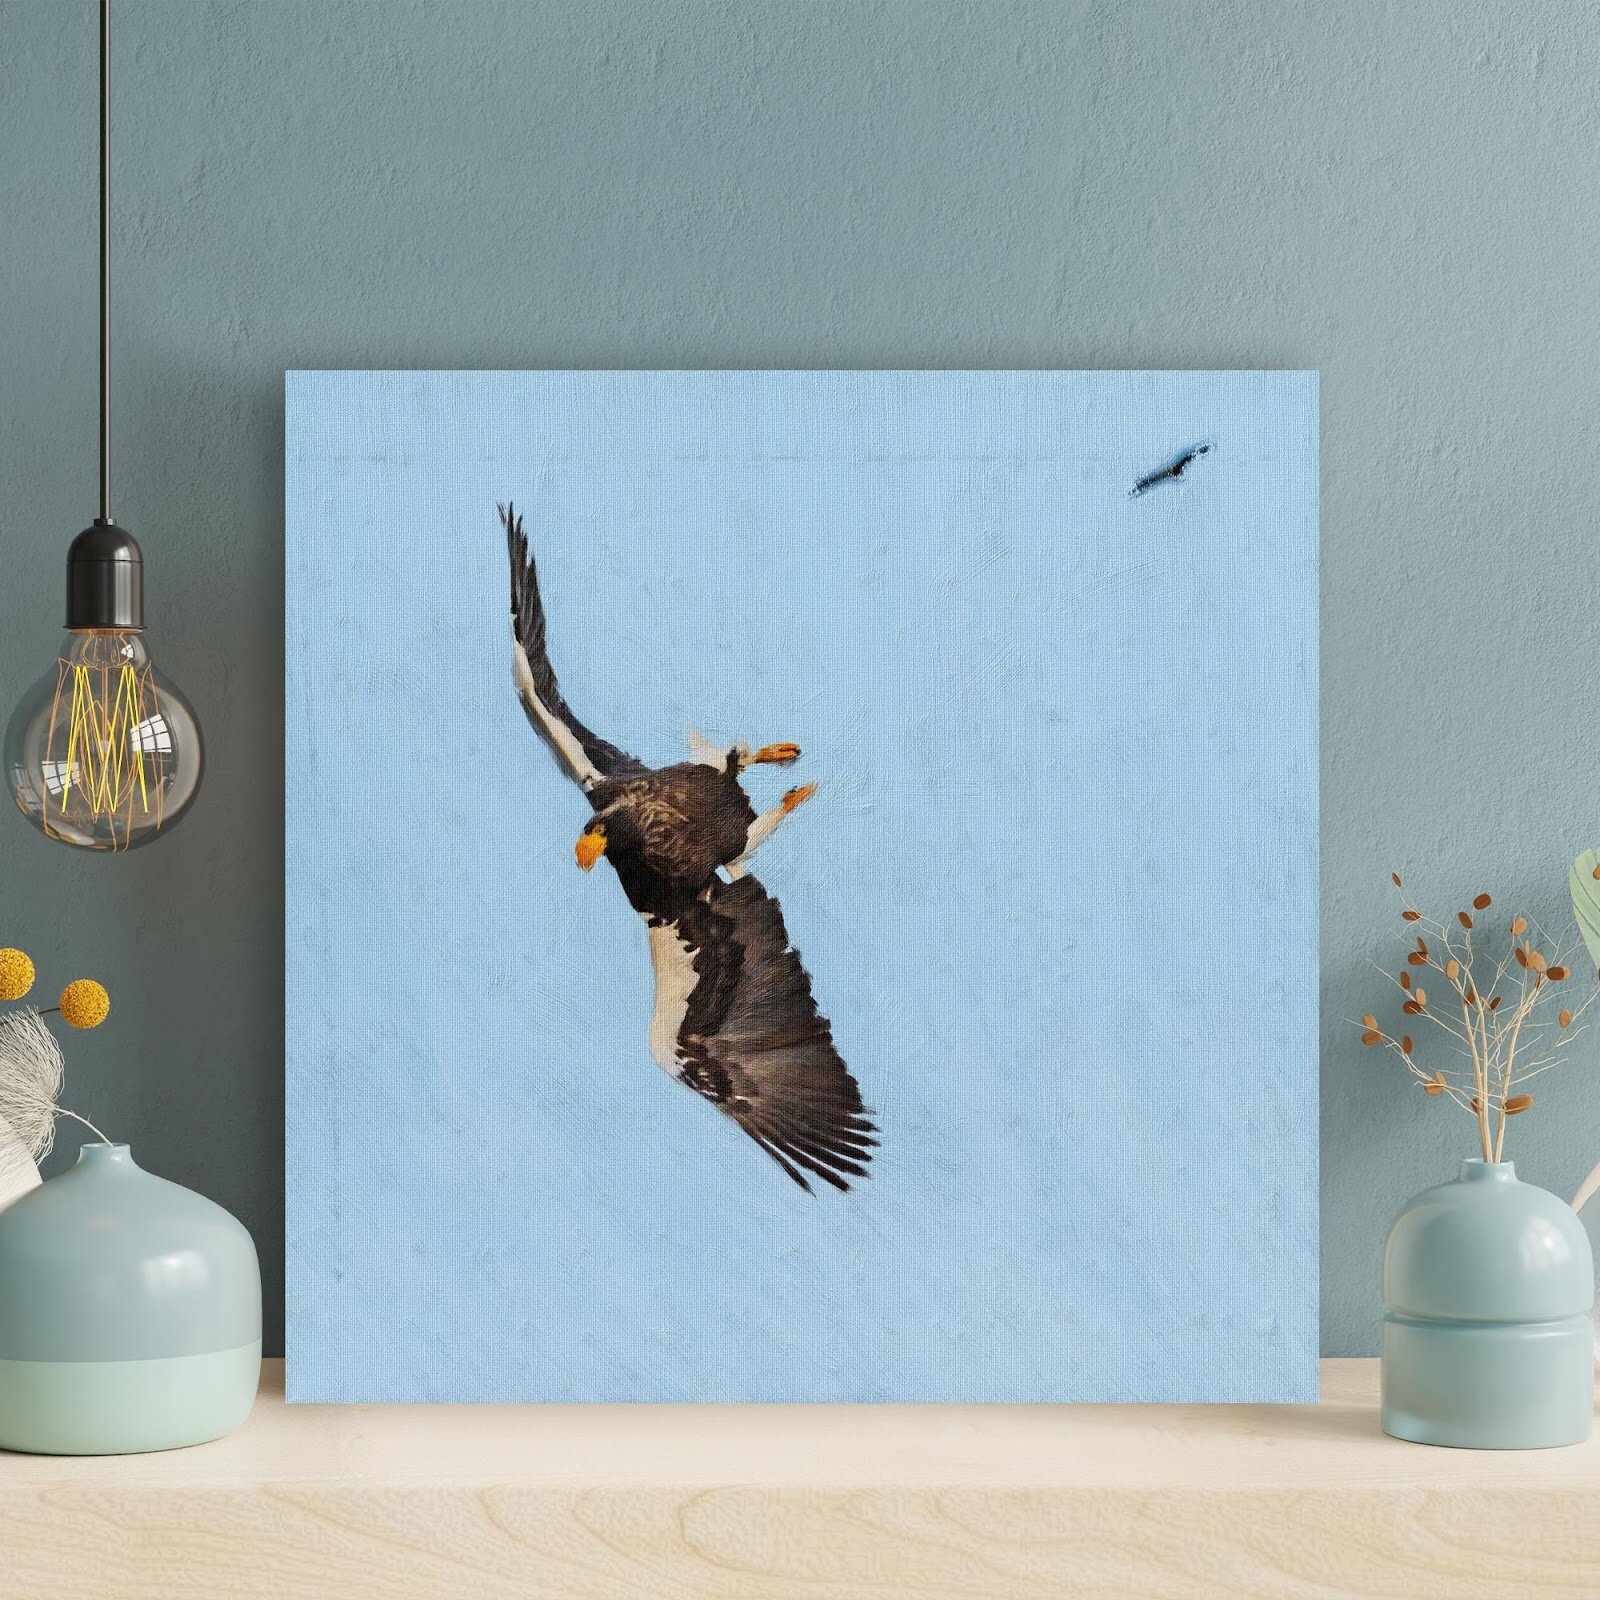 Loon Peak® Black And White Bird On Flight On Canvas Painting | Wayfair